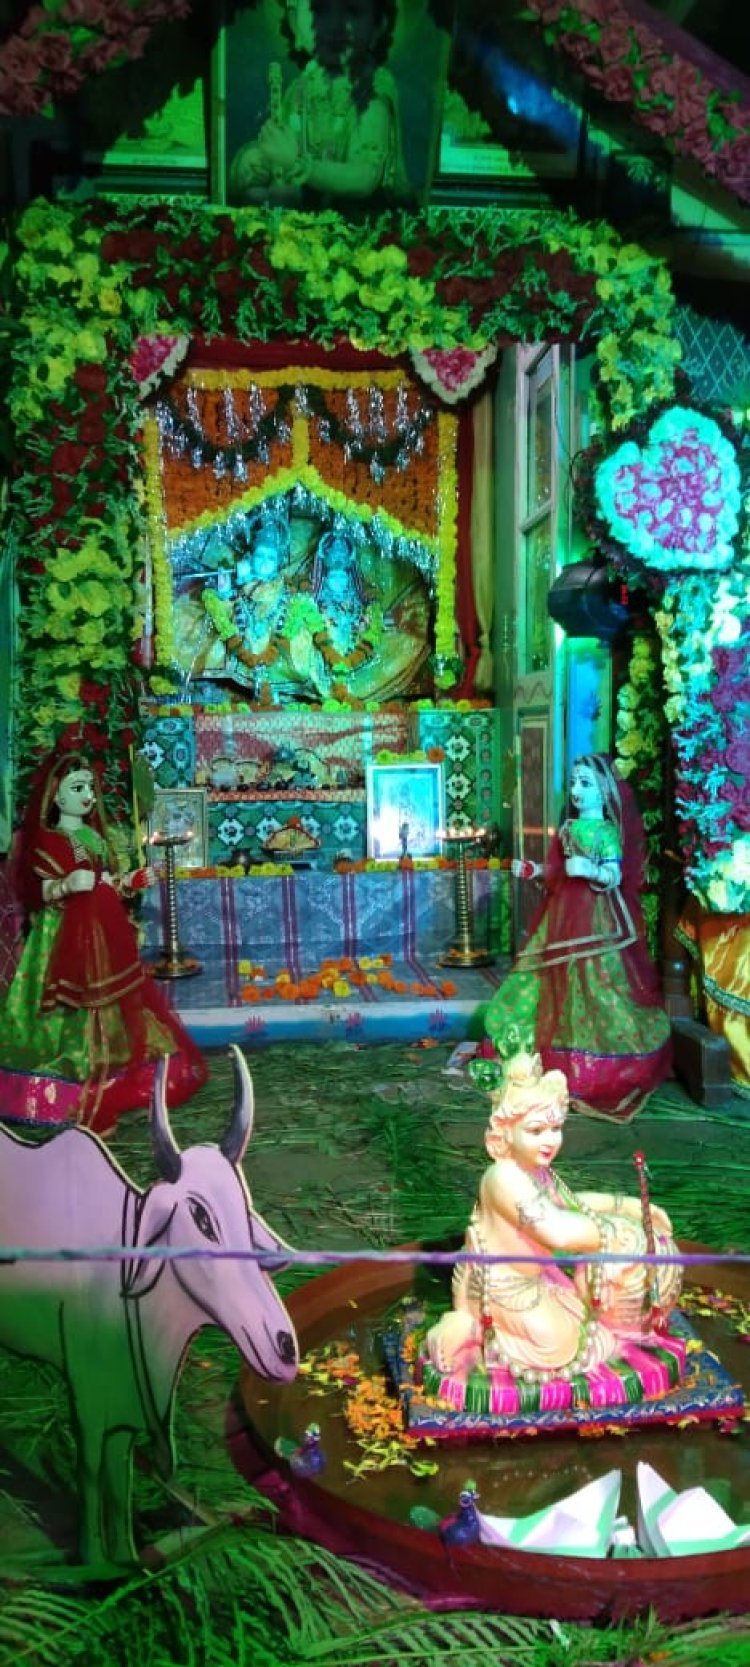 श्री बांके बिहारी मंदिर में भव्य आतिशबाजी के साथ श्री कृष्ण जन्माष्टमी का पर्व मनाया